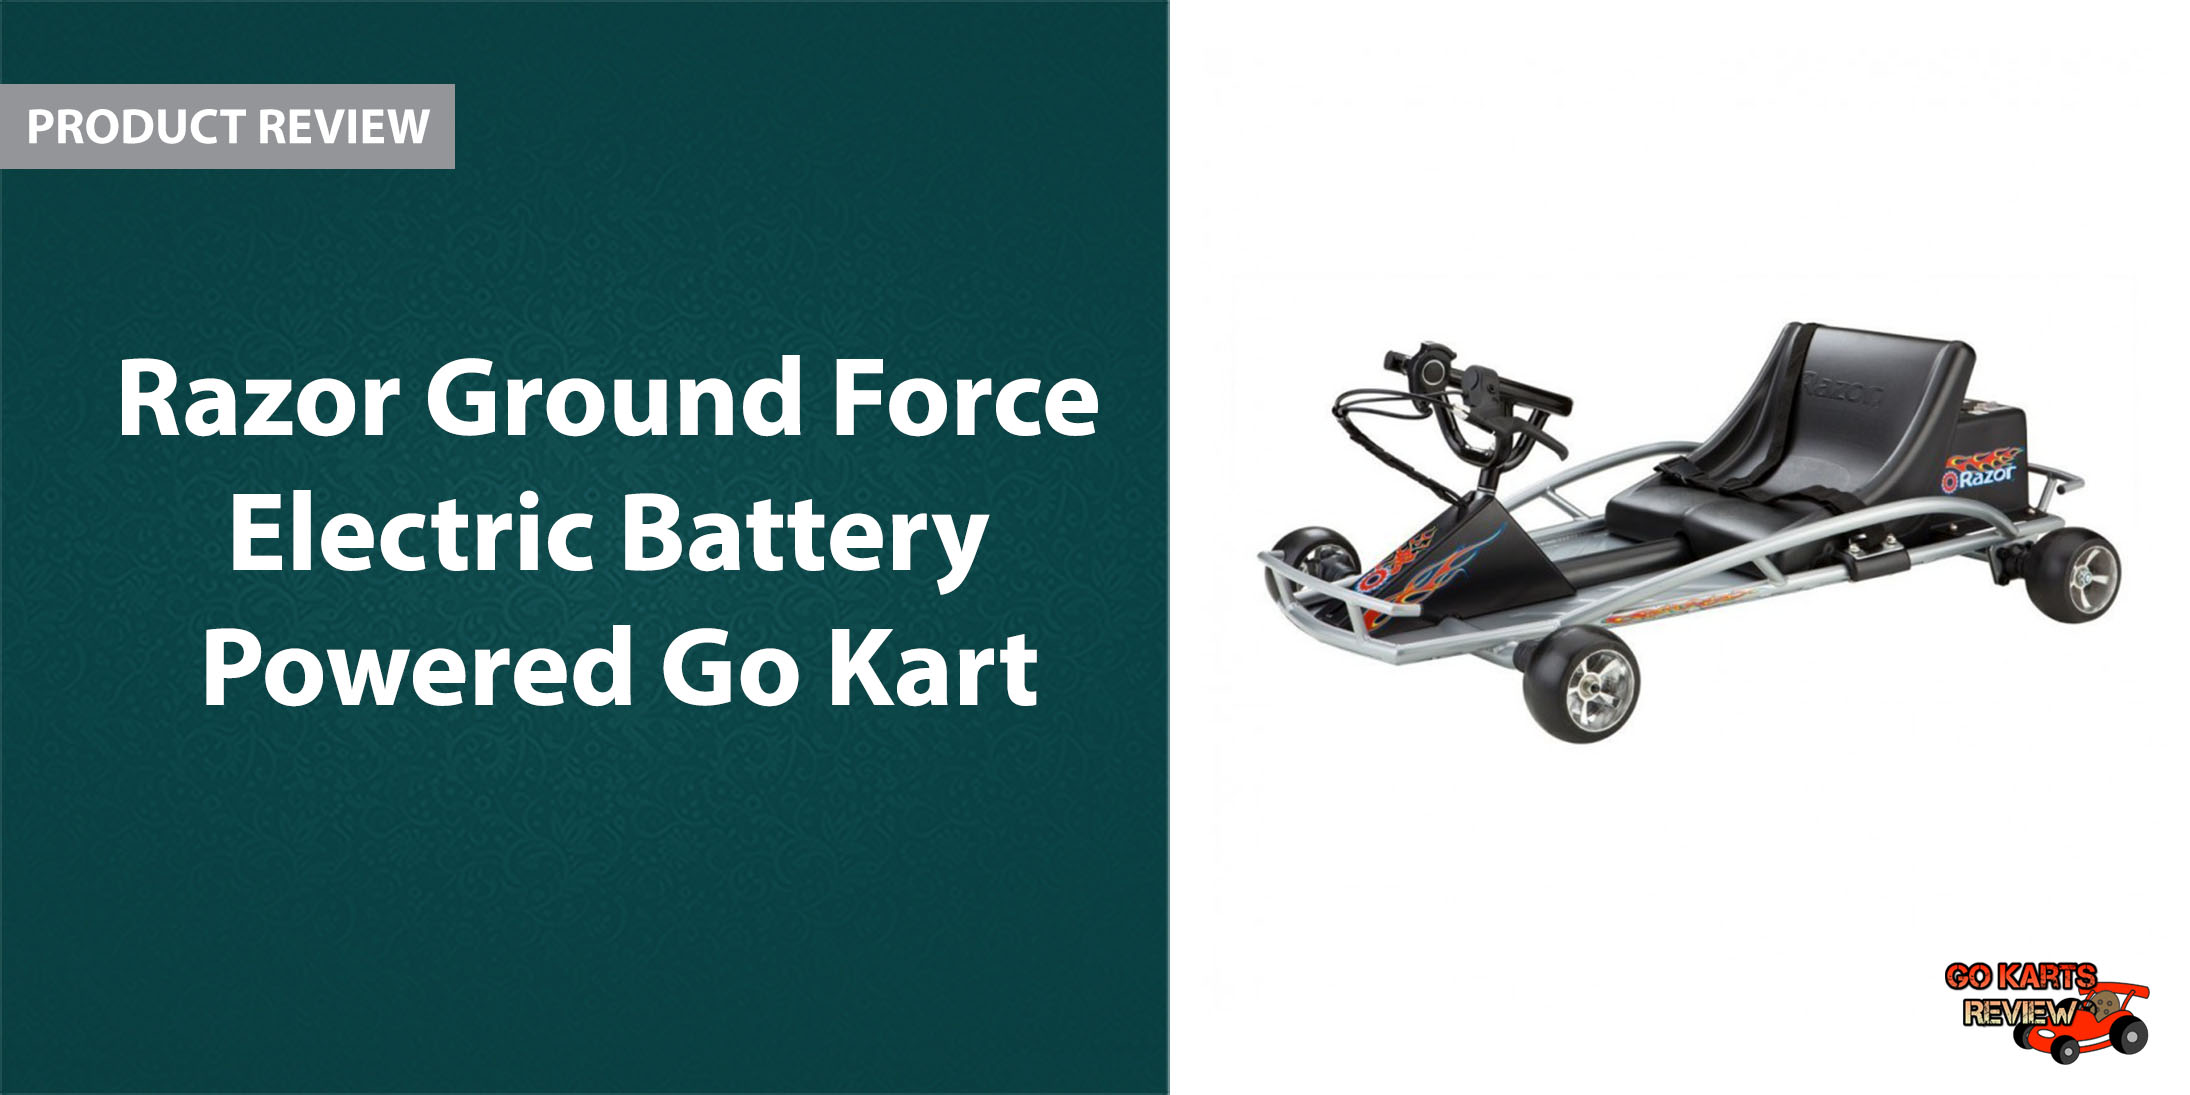 Battery Powered Go Kart